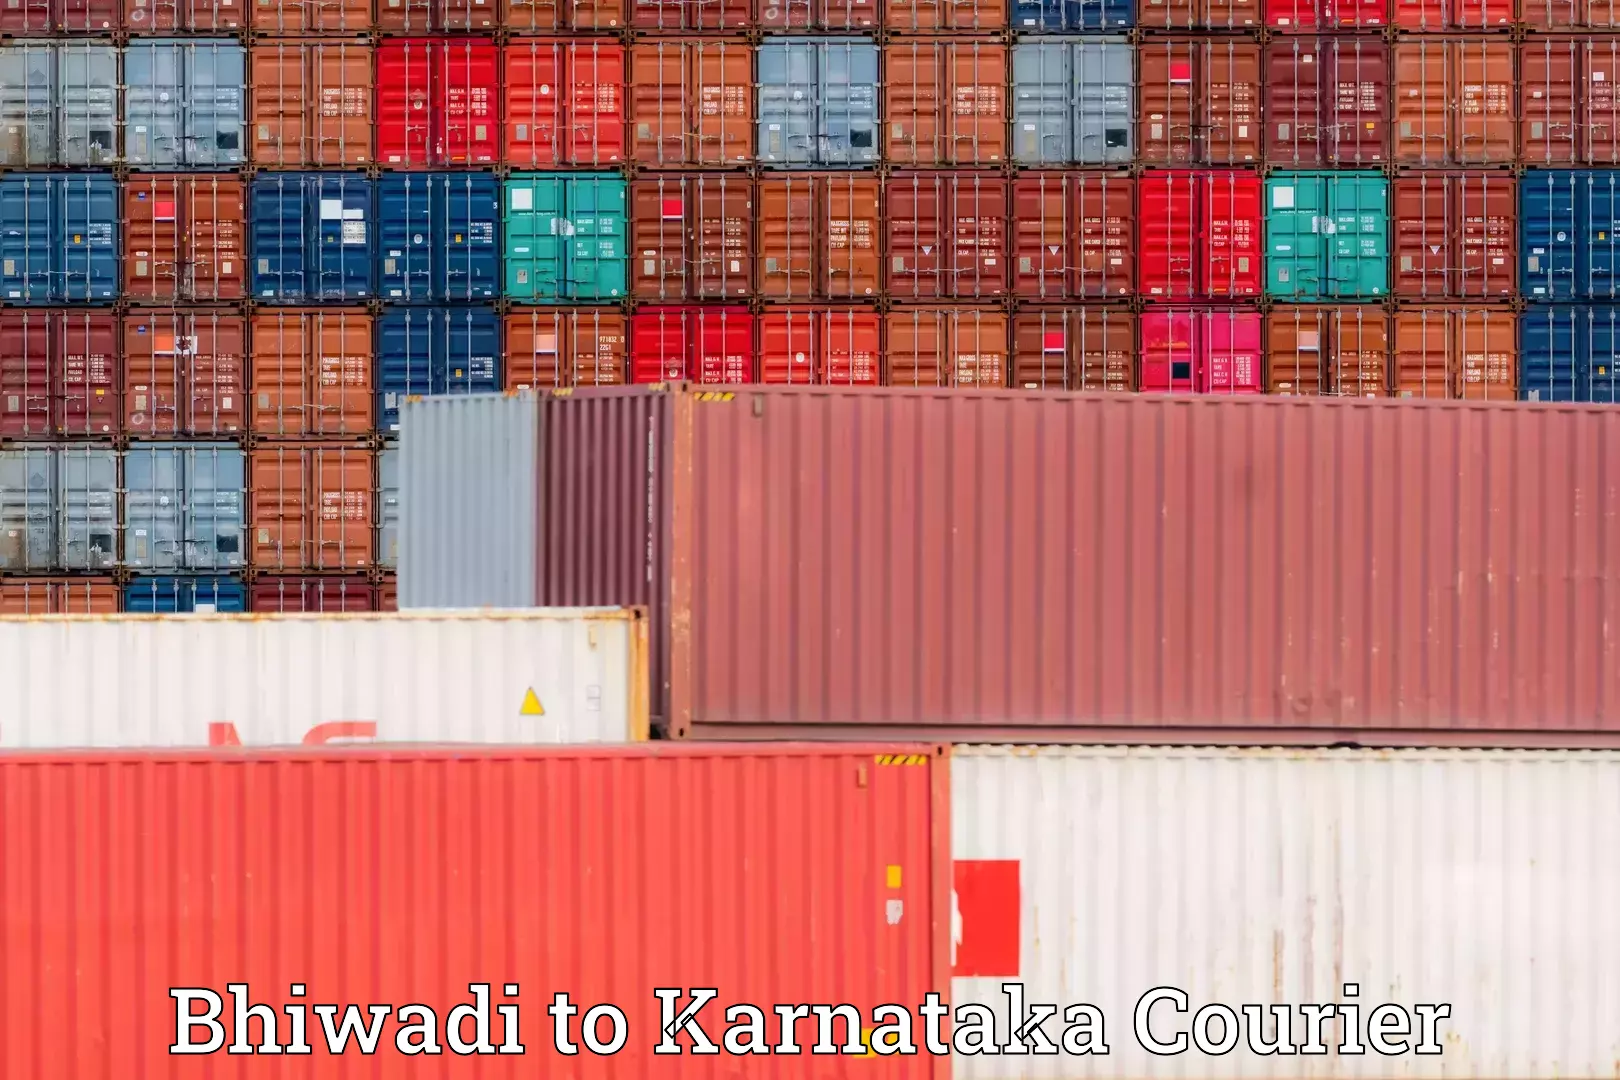 Furniture moving experts Bhiwadi to Karnataka